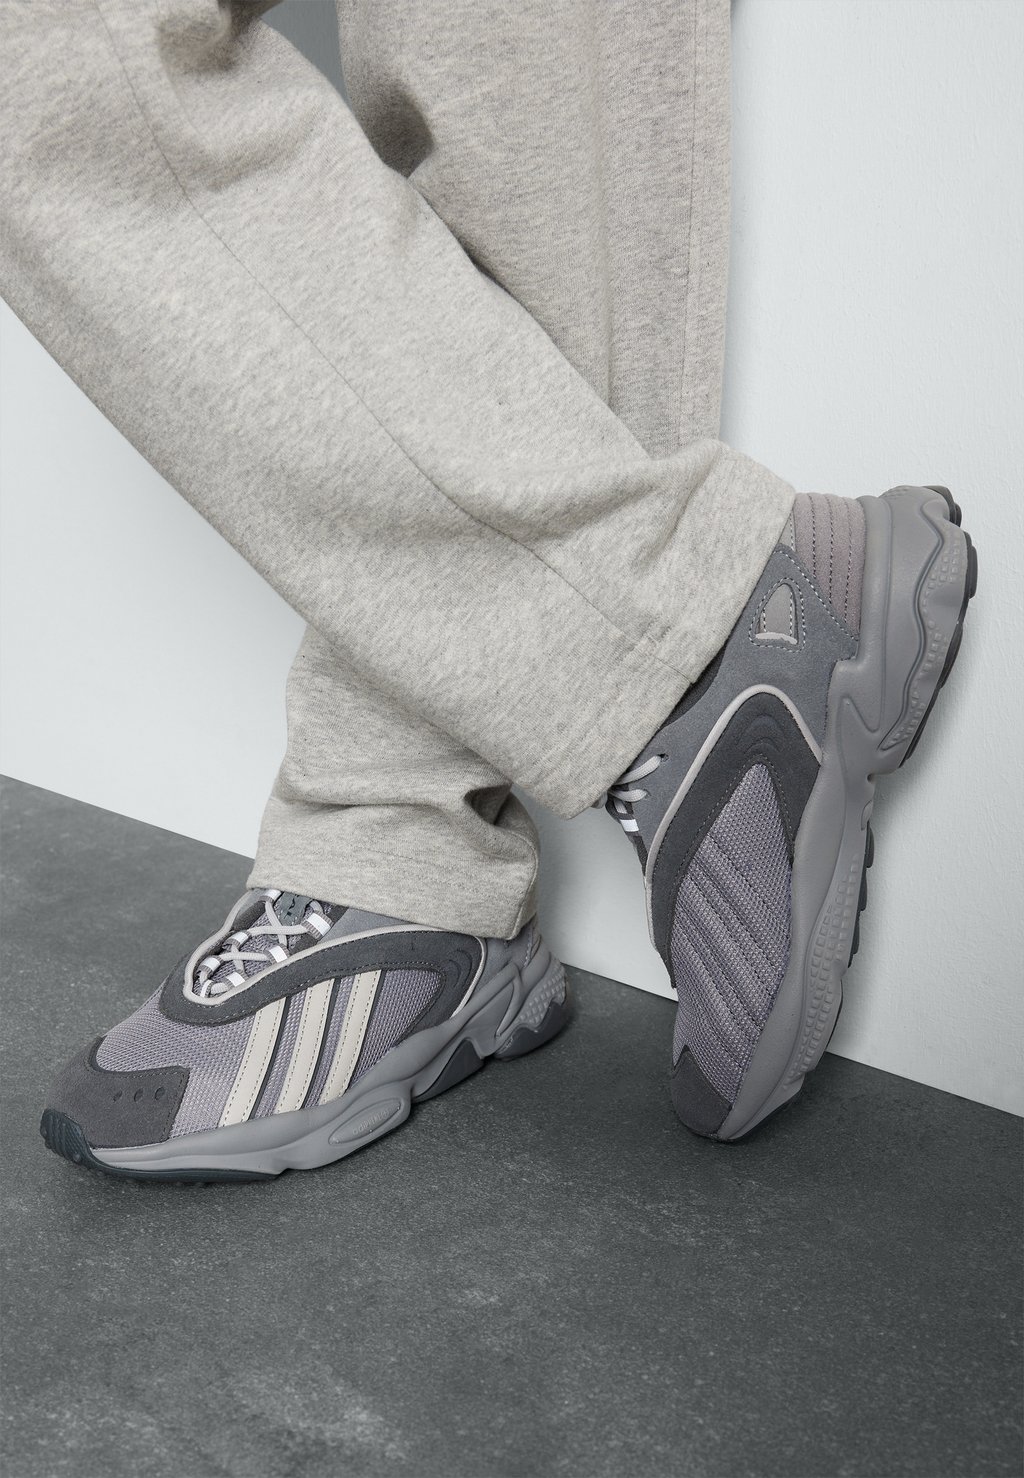 Низкие кроссовки Oztral Unisex adidas Originals, цвет grey/grey two/grey five майка ha1190 adidas wanmlcrop grey five 2xs